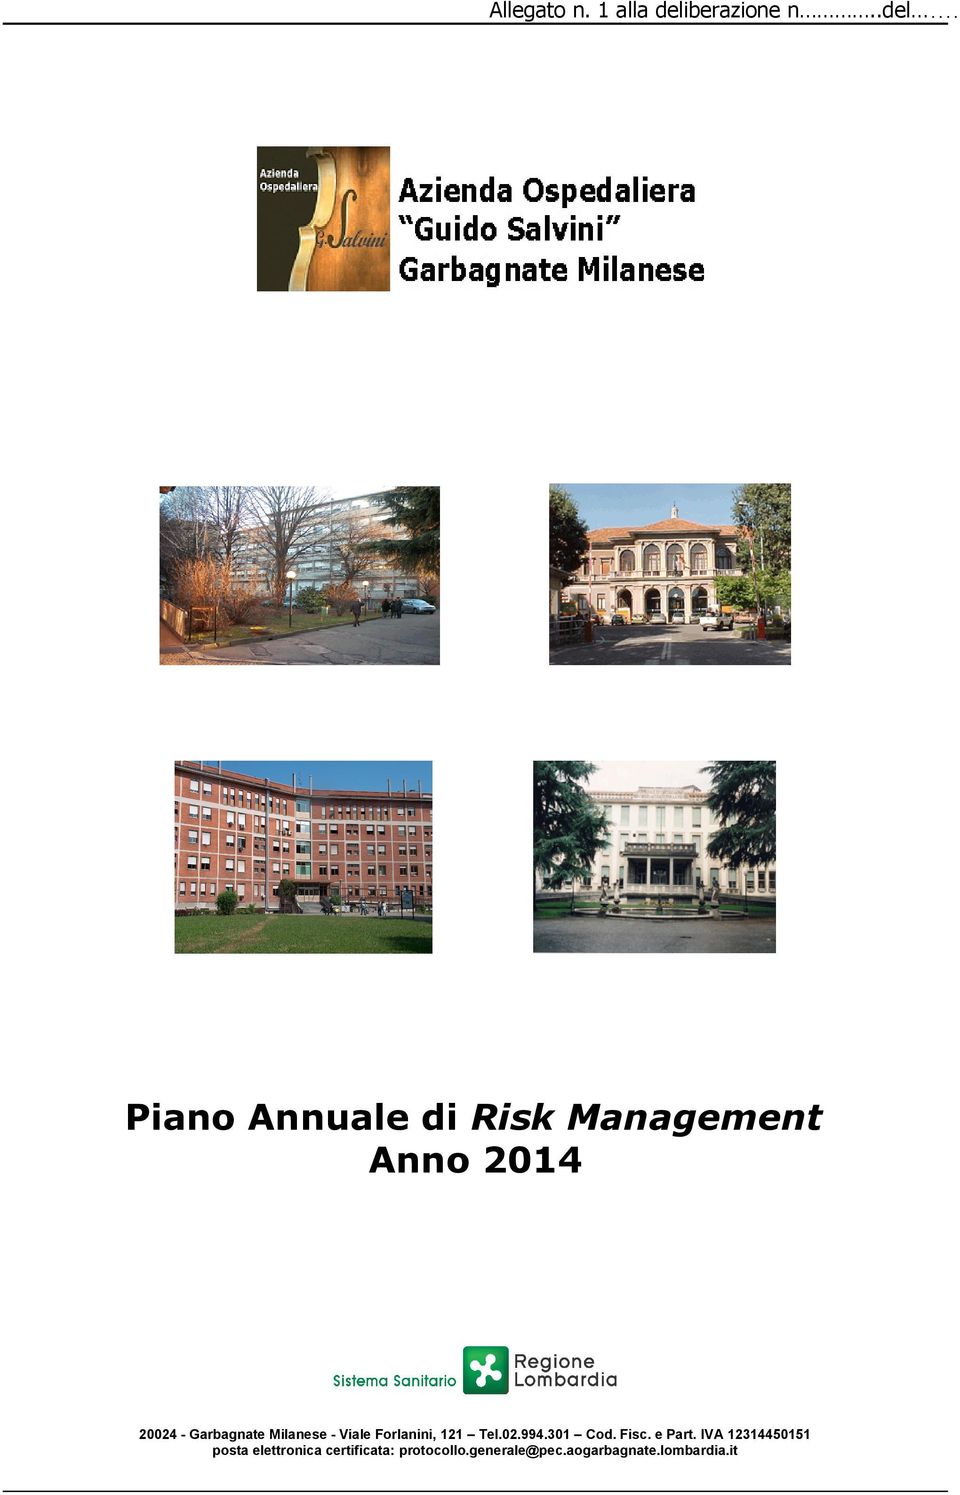 Piano Annuale di Risk Management Anno 2014 20024 - Garbagnate